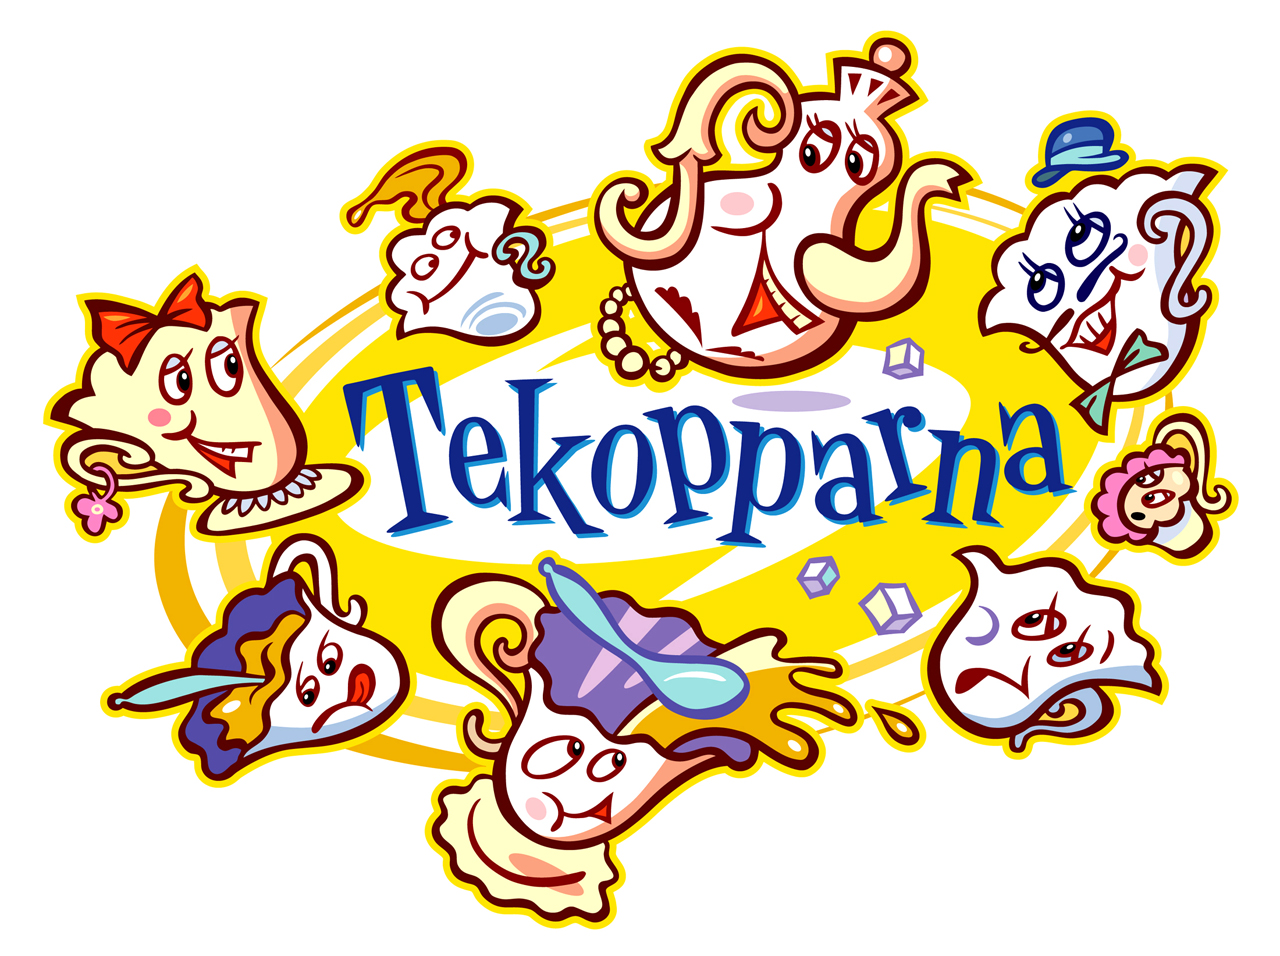 Logo for the ride Tekopparna